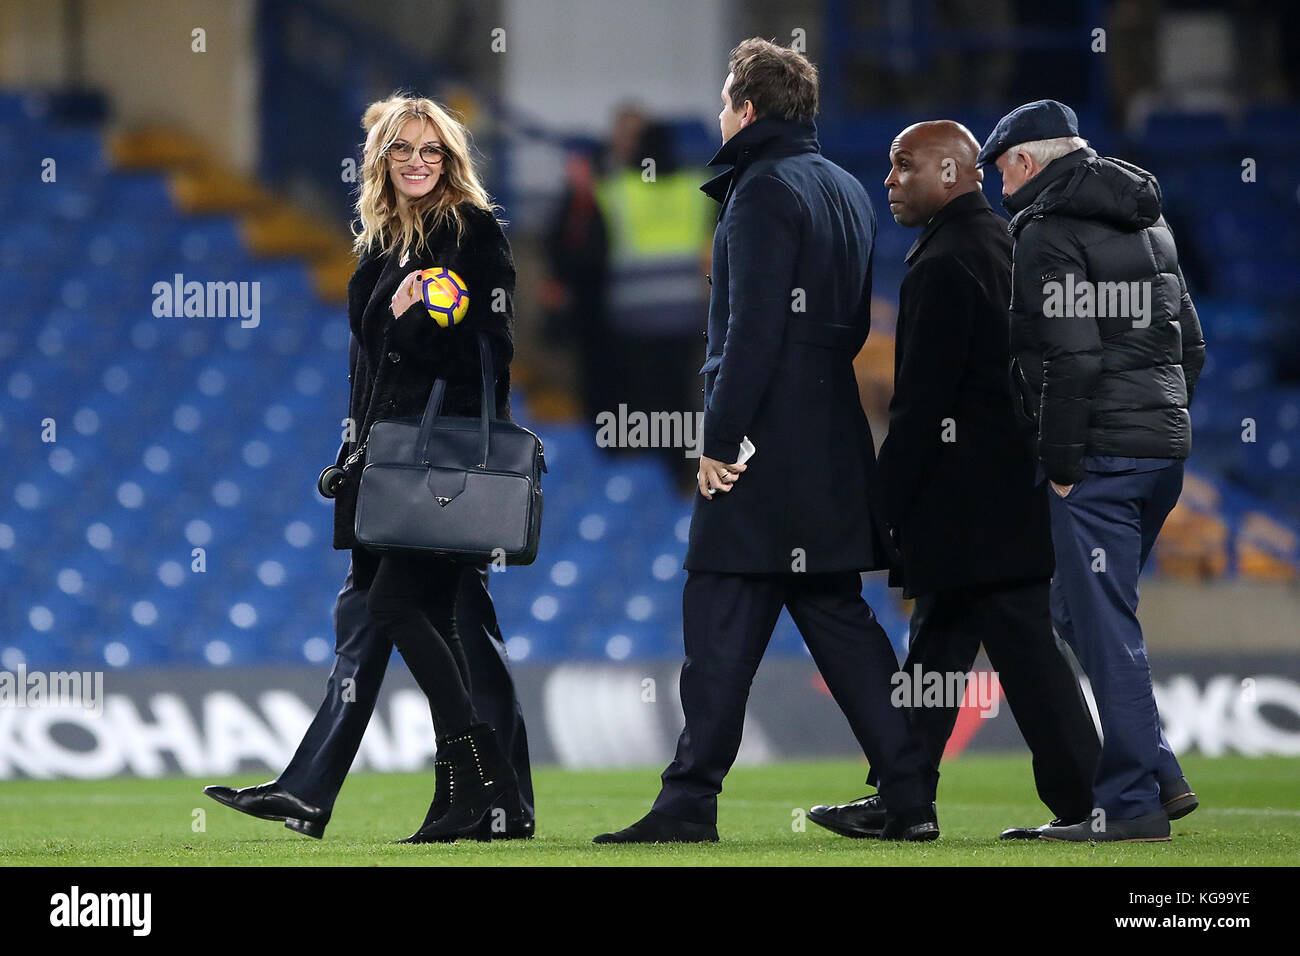 L'attrice americana Julia Roberts sul campo dopo la partita della Premier League a Stamford Bridge, Londra. Foto Stock